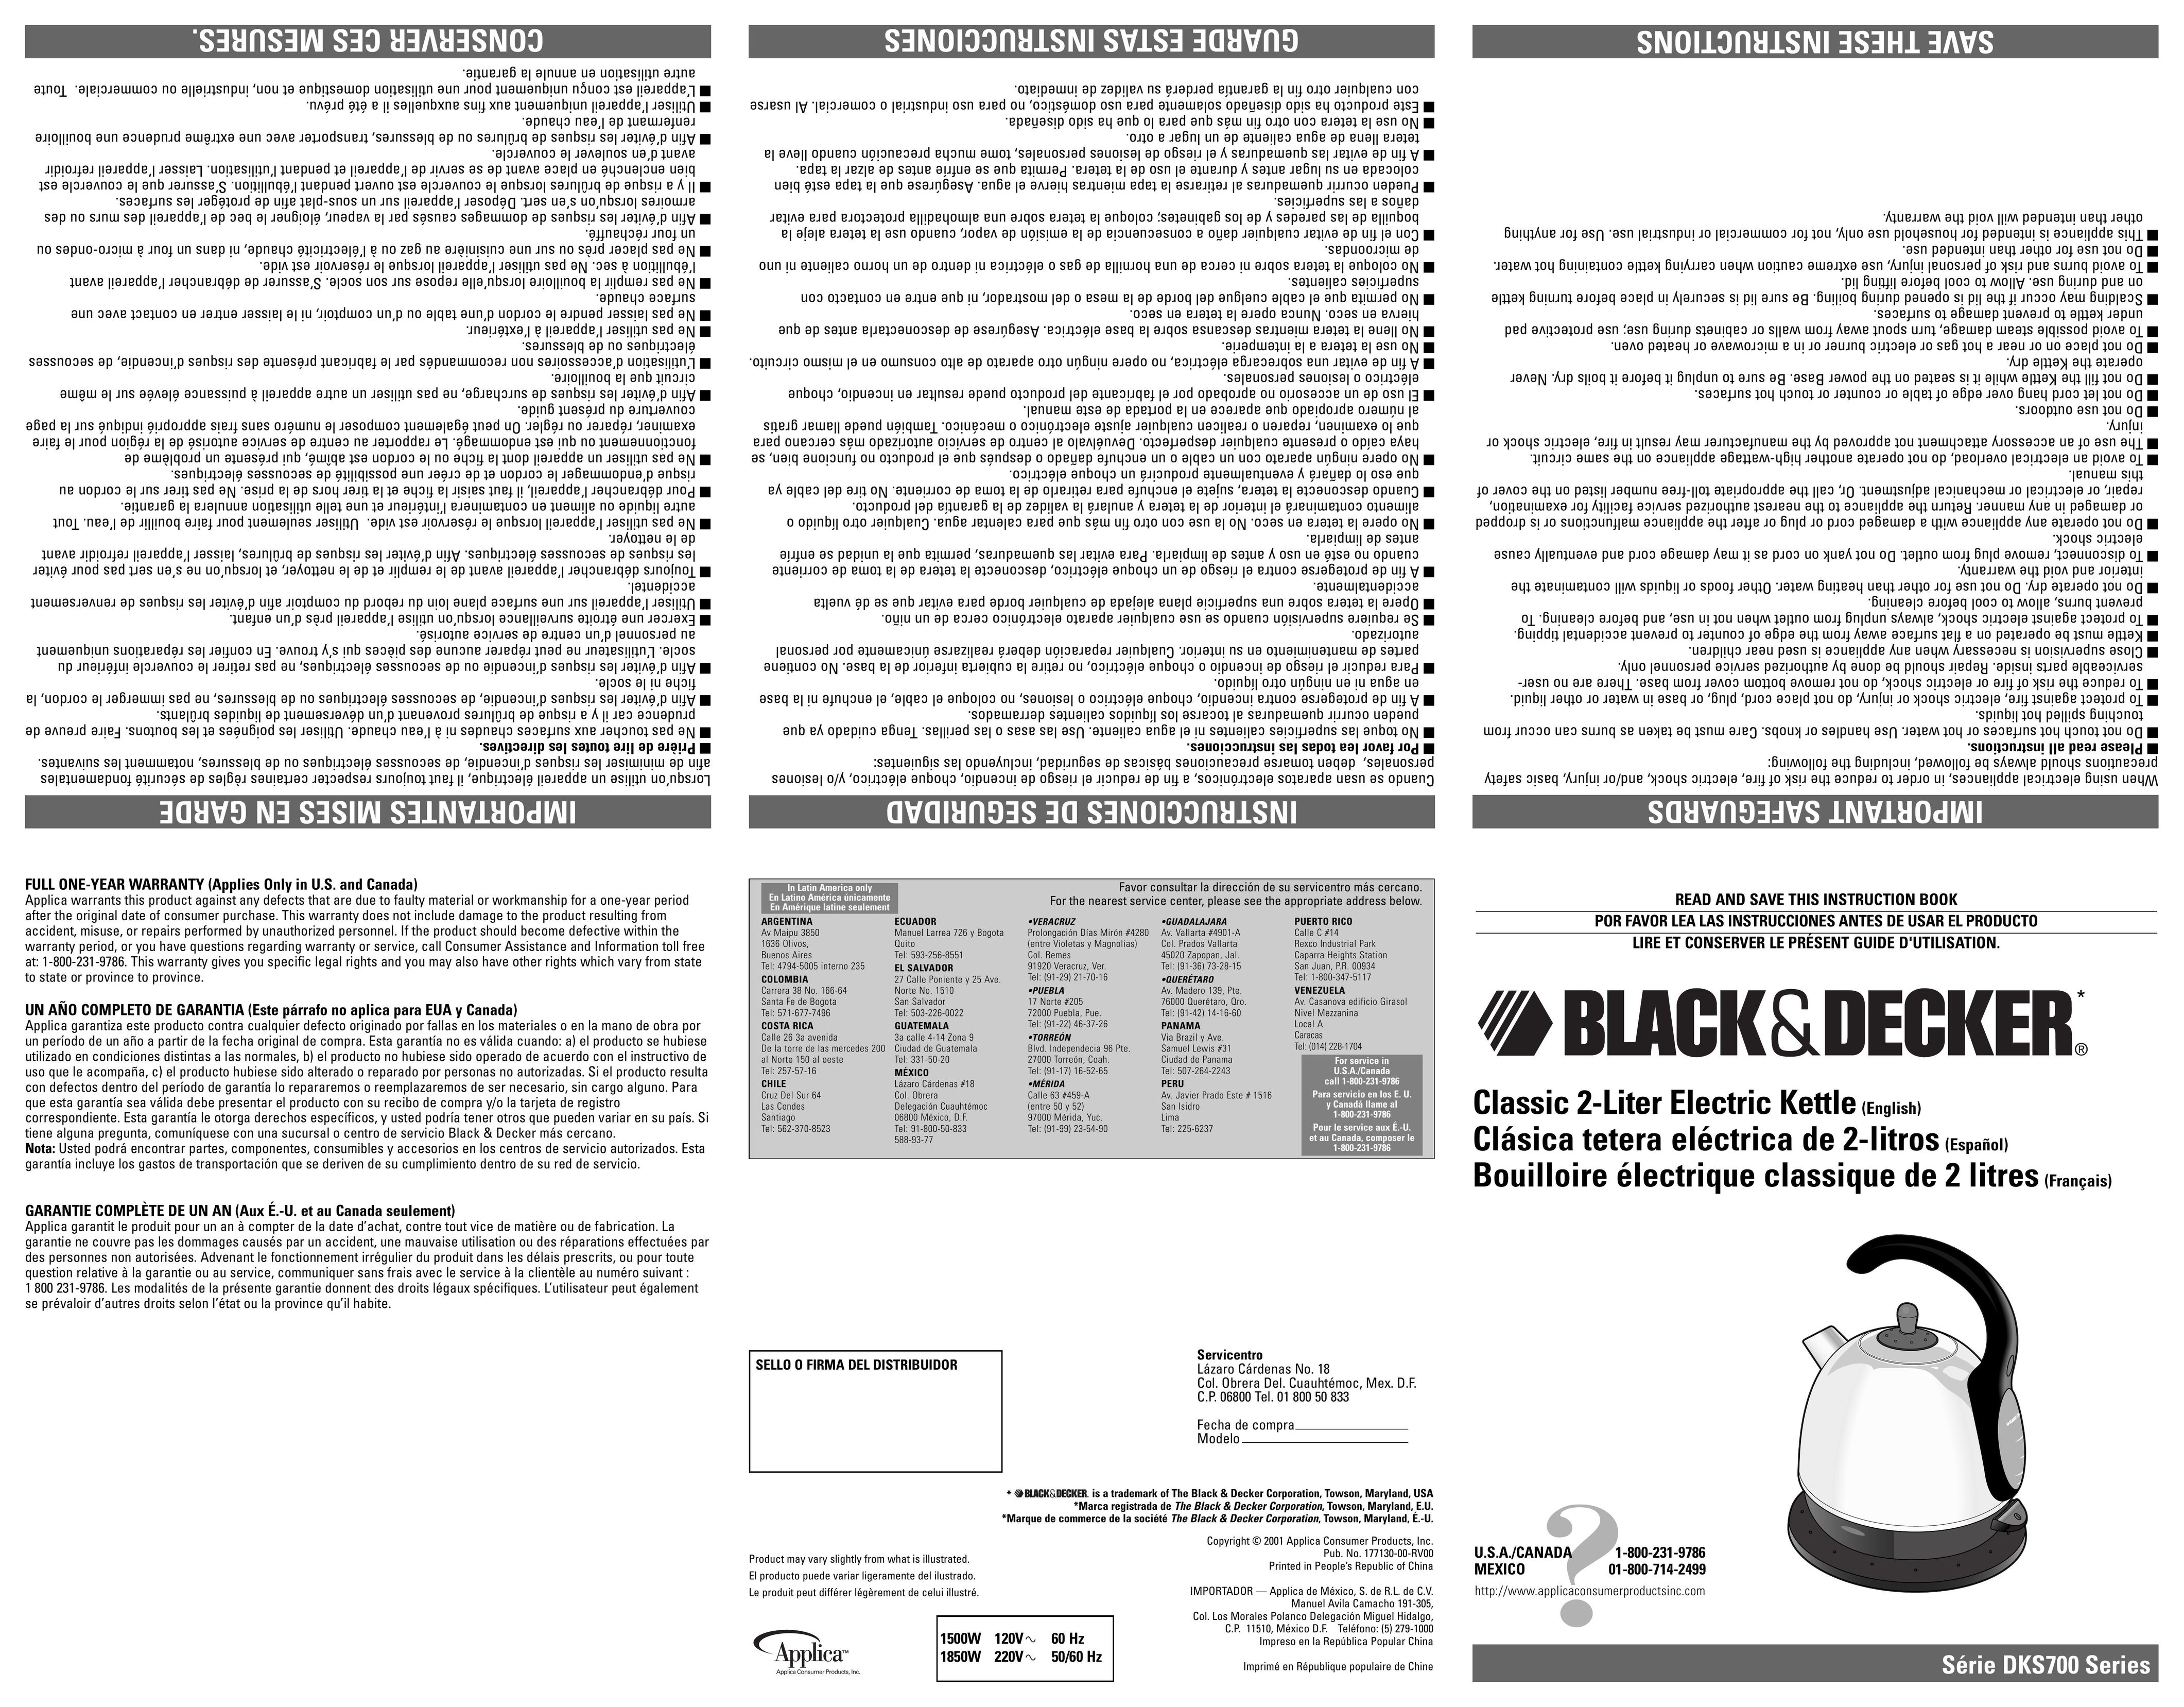 Black & Decker DKS700 Hot Beverage Maker User Manual